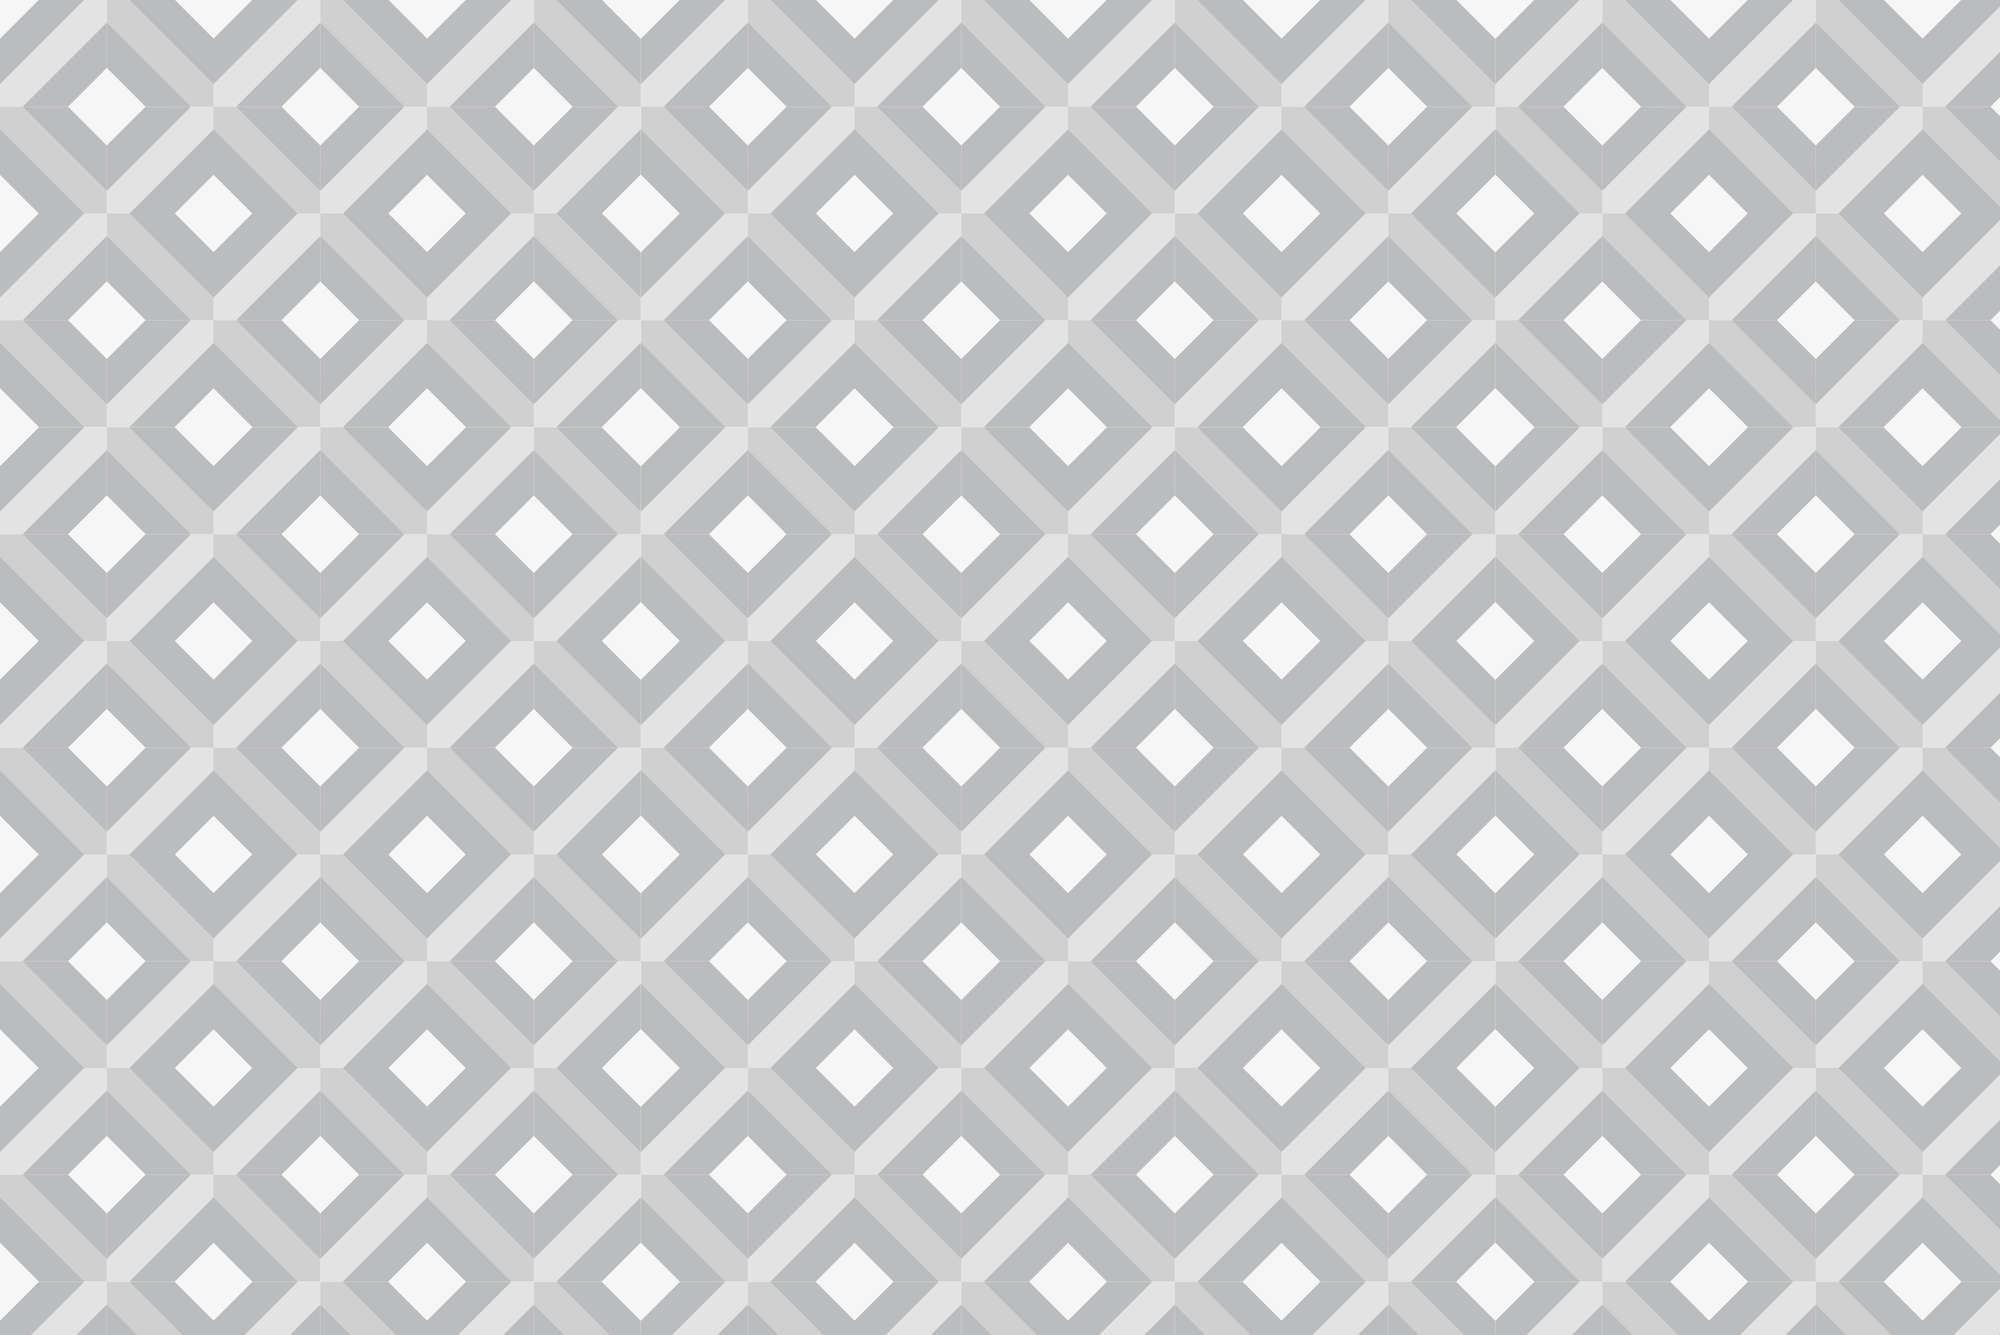             Papier peint design motif boîte avec petits carrés gris sur intissé lisse mat
        